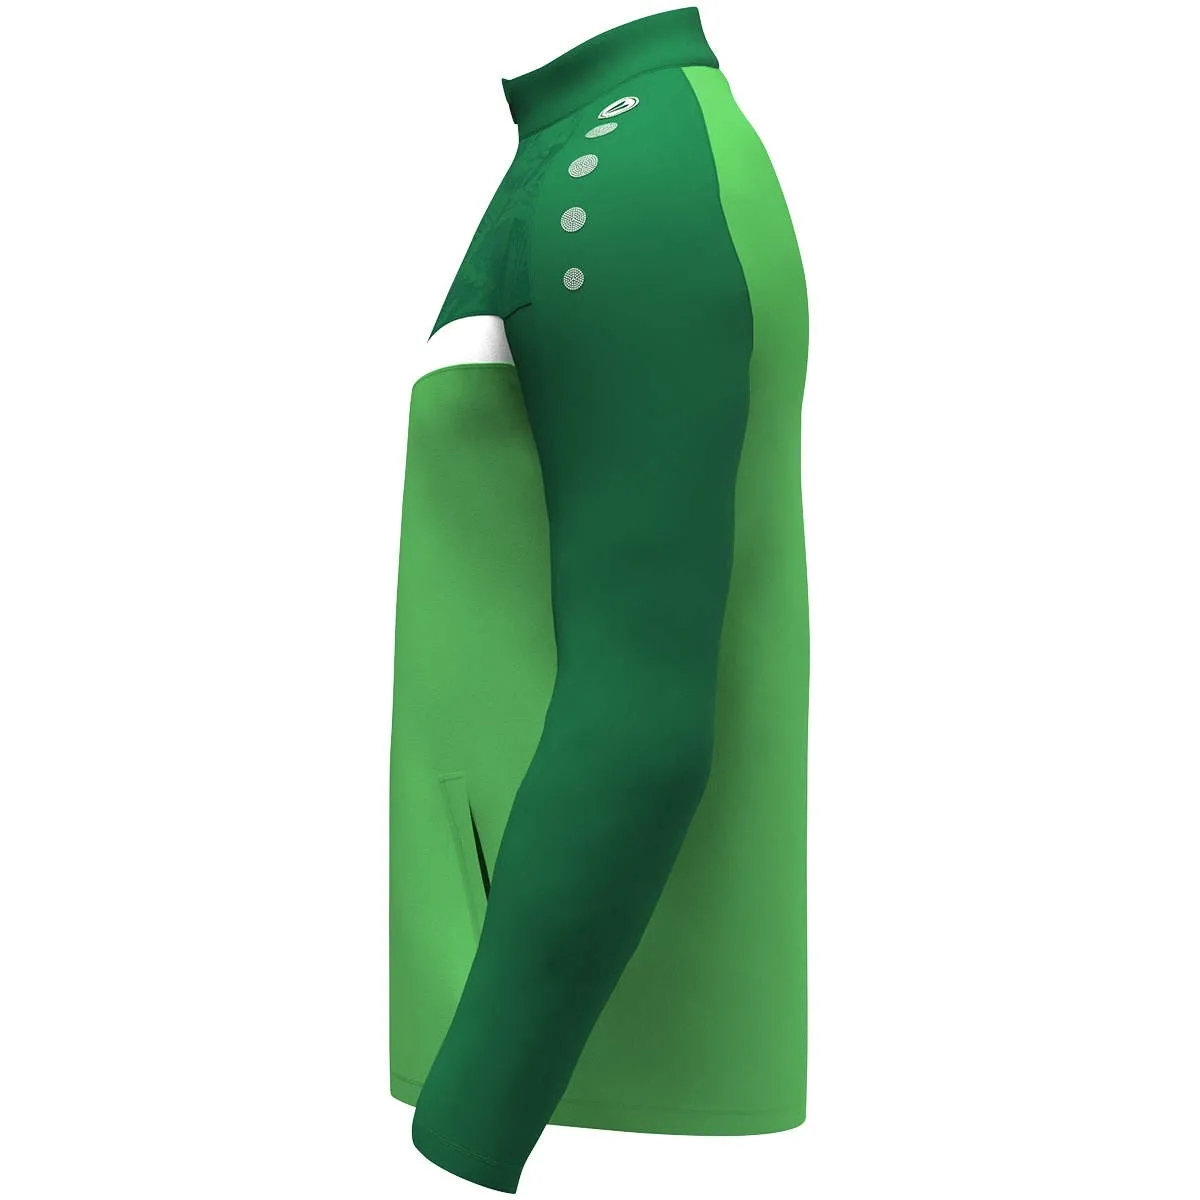 Veste en polyester JAKO Iconic vert tendre/vert sport